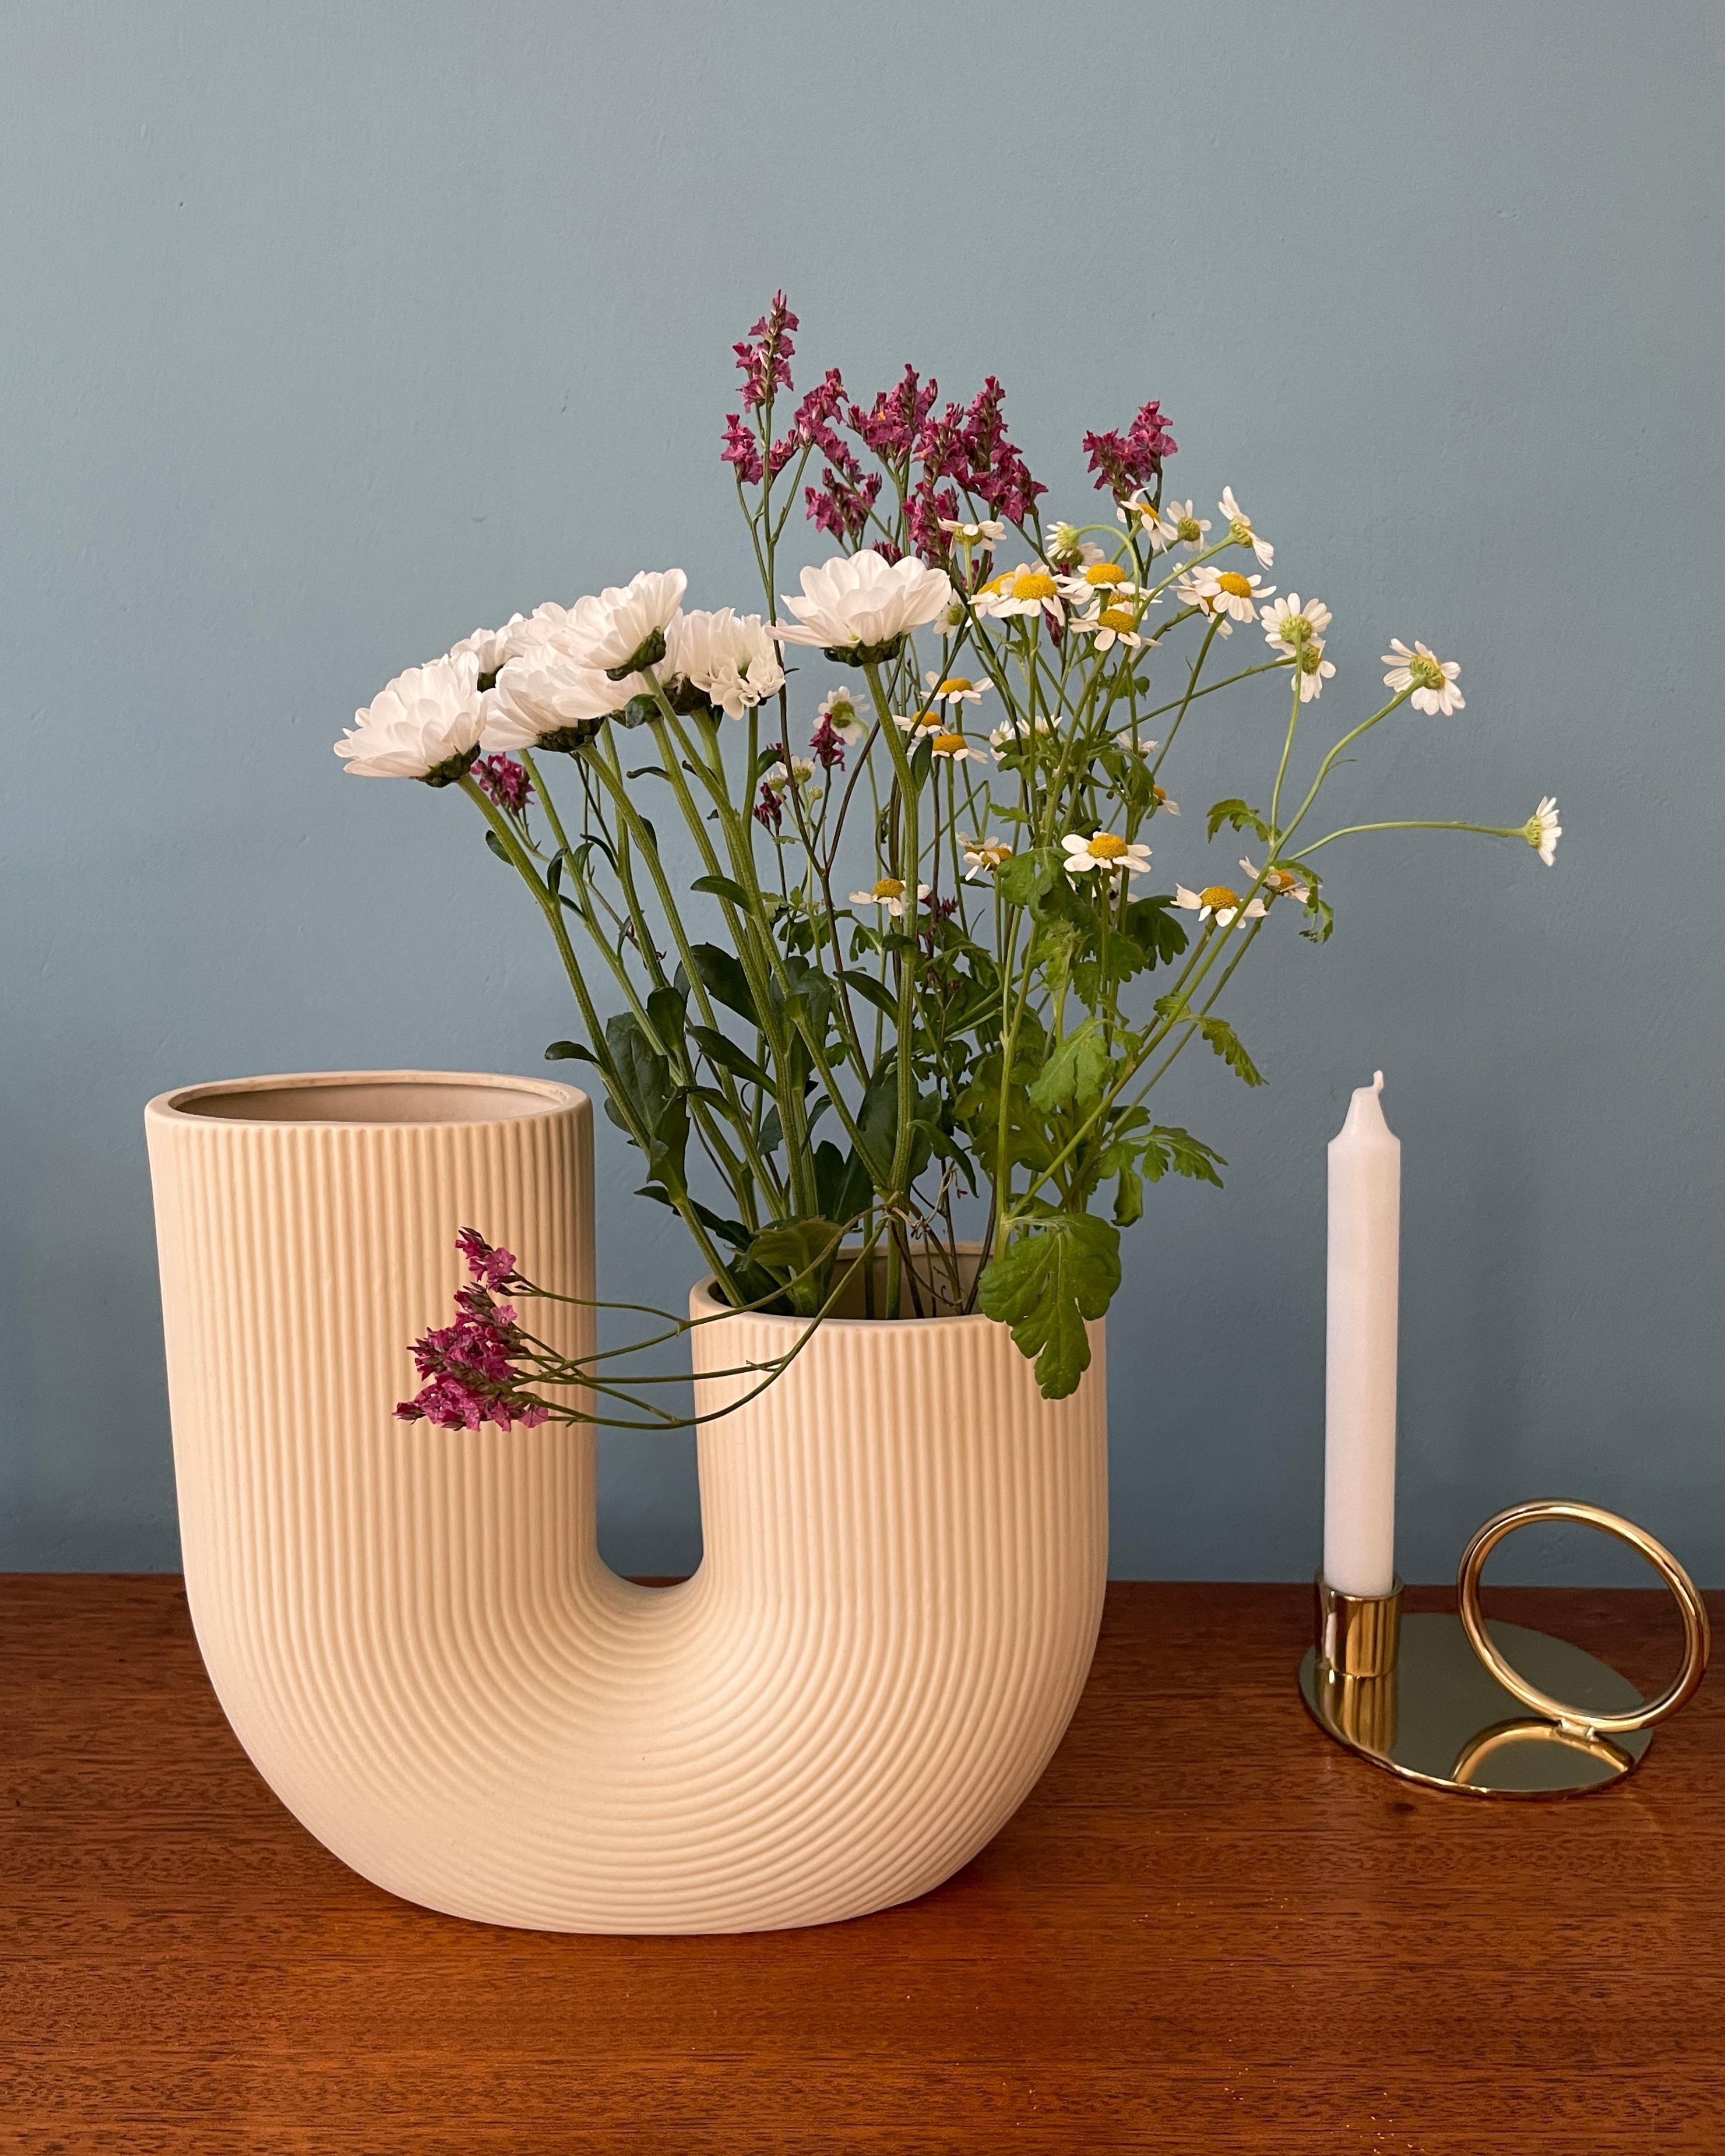 Frische Blumen = gute Laune!

#blumen #freshflowers #vase #scandinaviandesign 